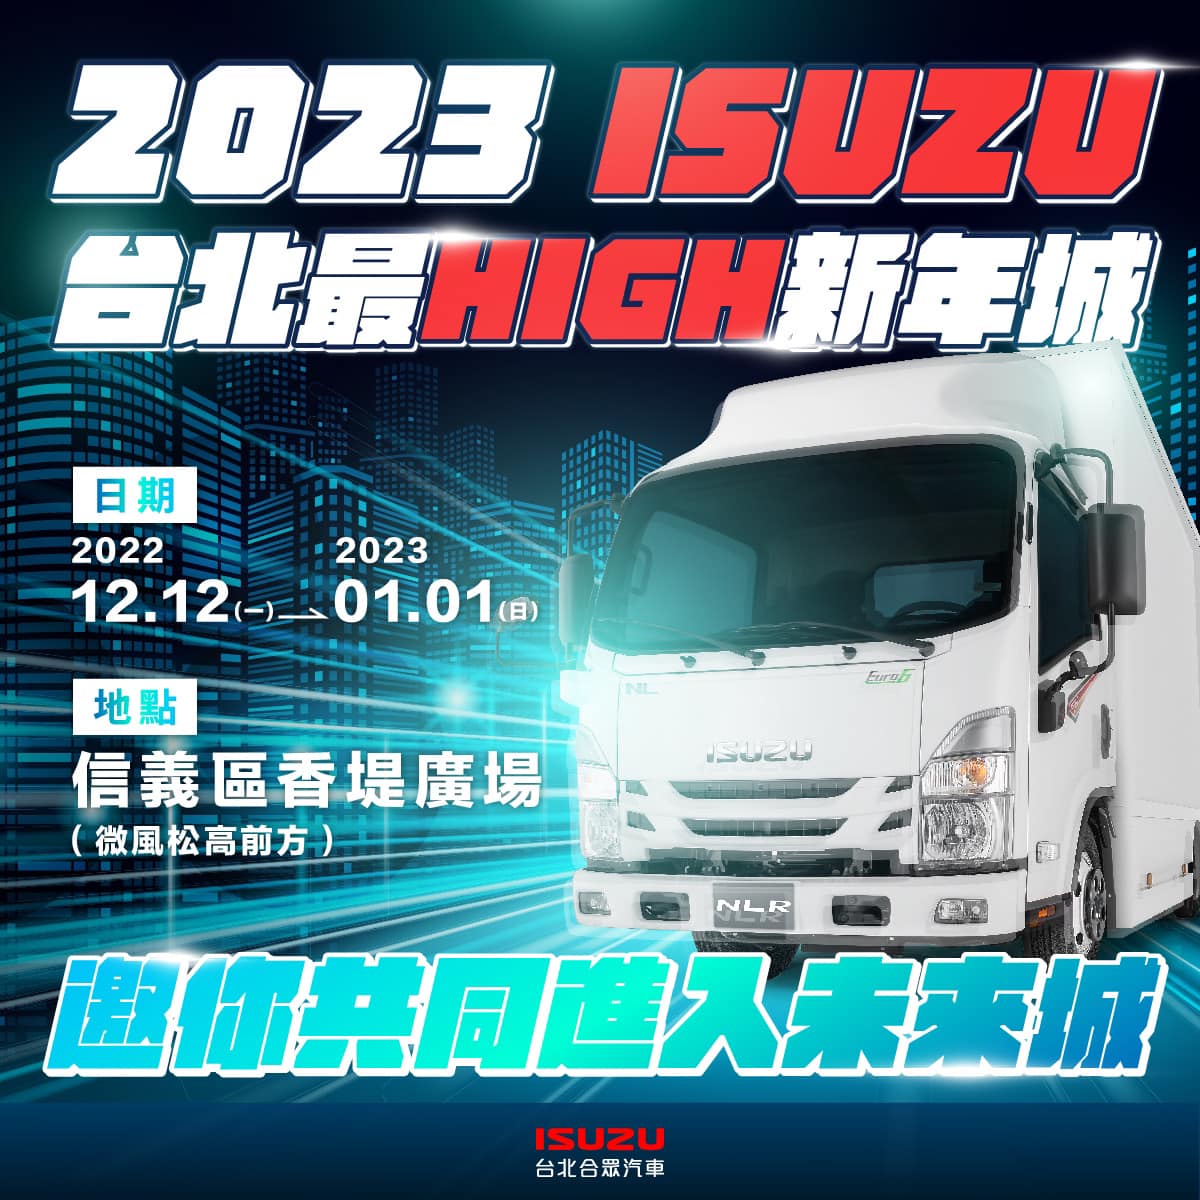 2023 ISUZU台北最High新年城 邀您穿越隧道倒數跨年